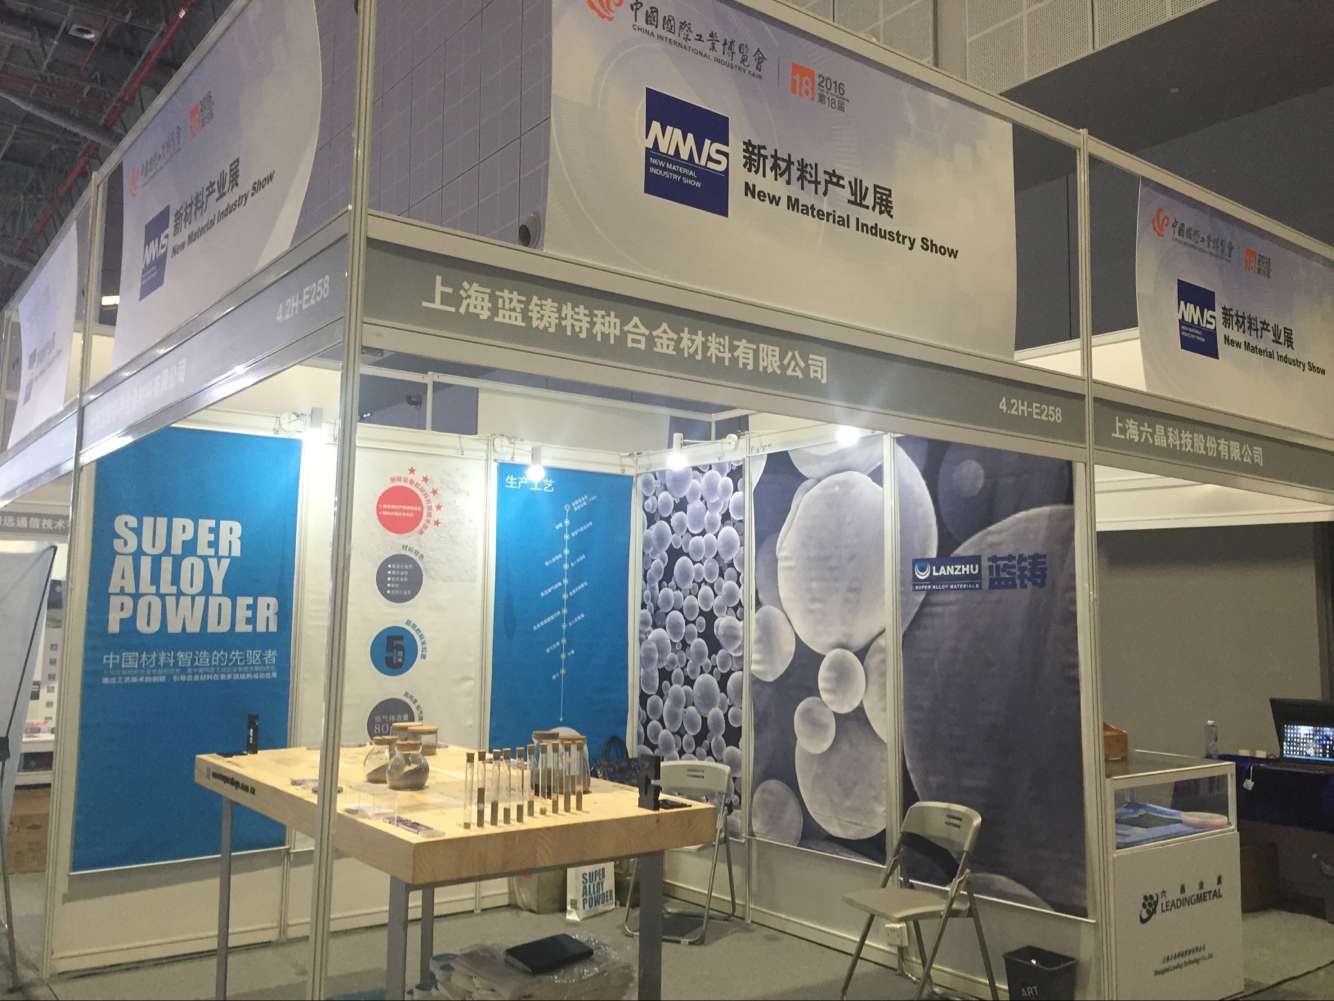 蓝铸得奖了！！！快来2016第18届中国国际工业博览会新材料产业展上看看呀！